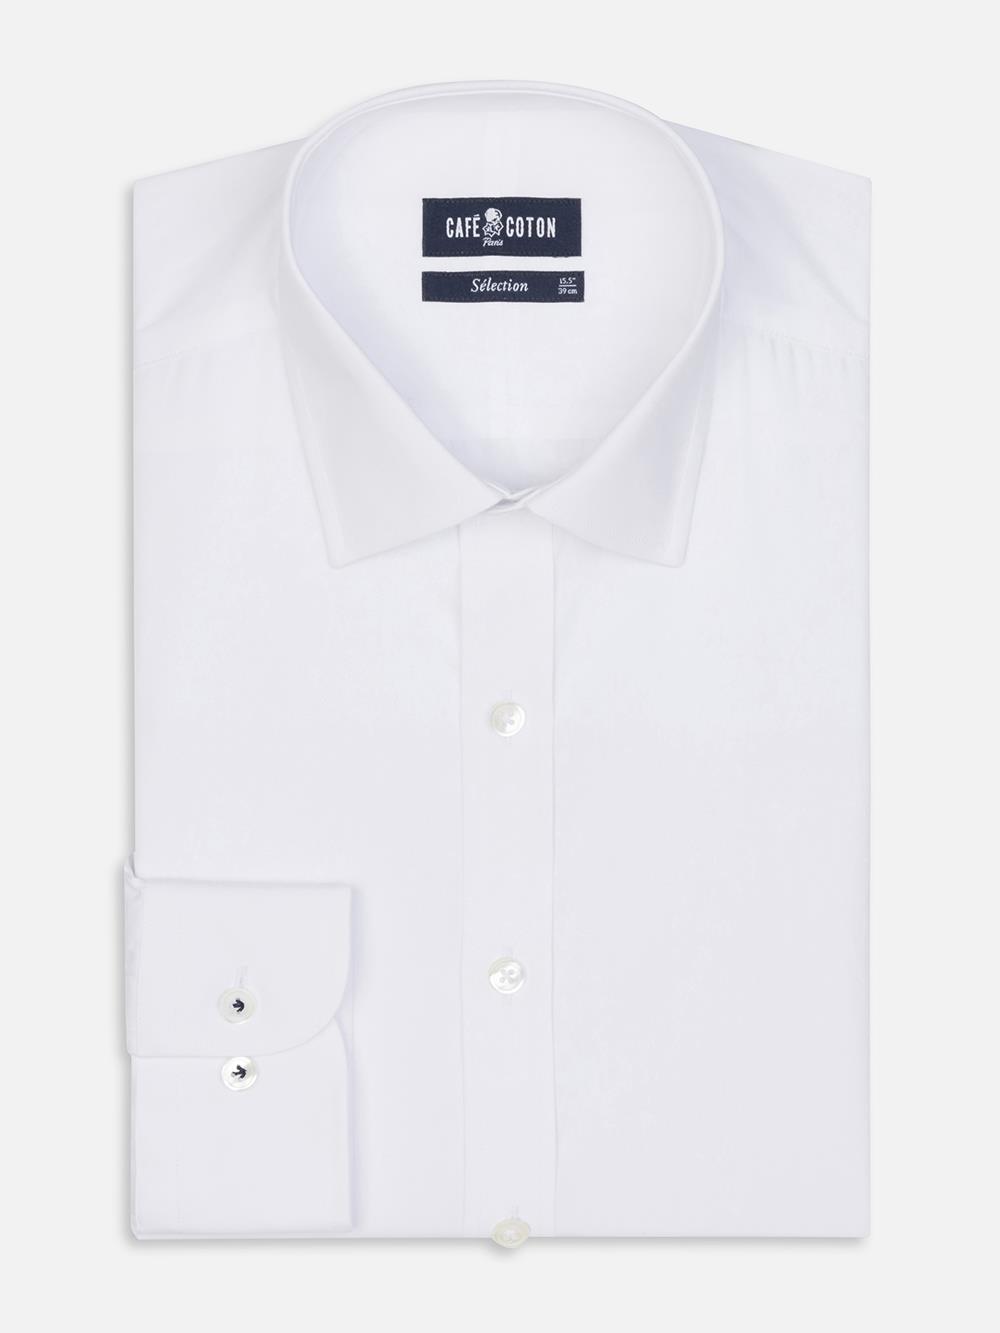 
Tailliertes Hemd aus Popeline royal weiß
